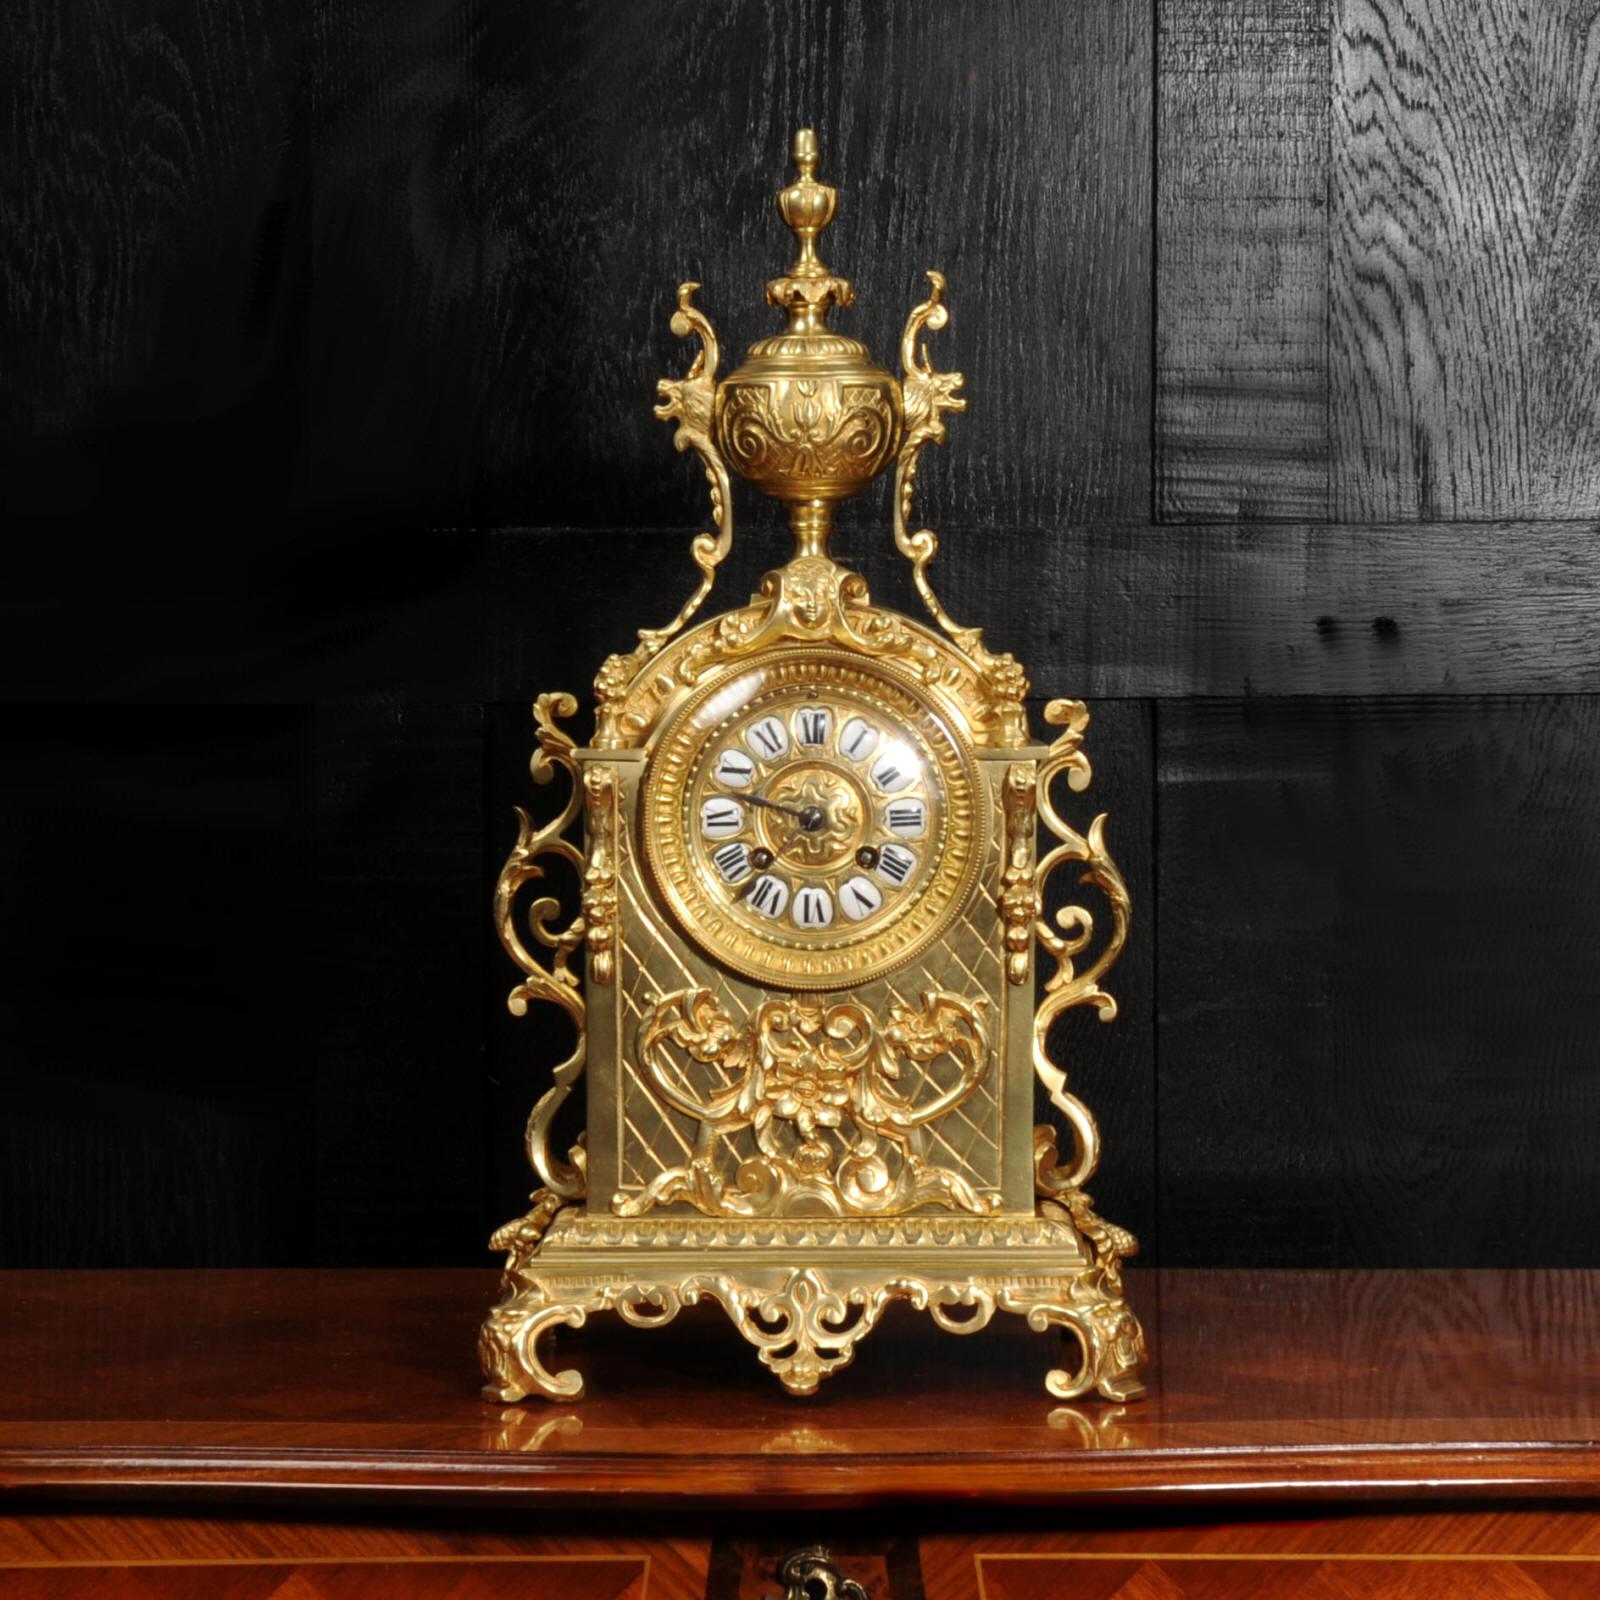 Une belle horloge française ancienne, modelée dans le style baroque en bronze doré. Il est de forme architecturale avec un motif appliqué de fleurs, de rinceaux et de cornes d'abondance. Des consoles à volutes sont montées sur les côtés et une urne